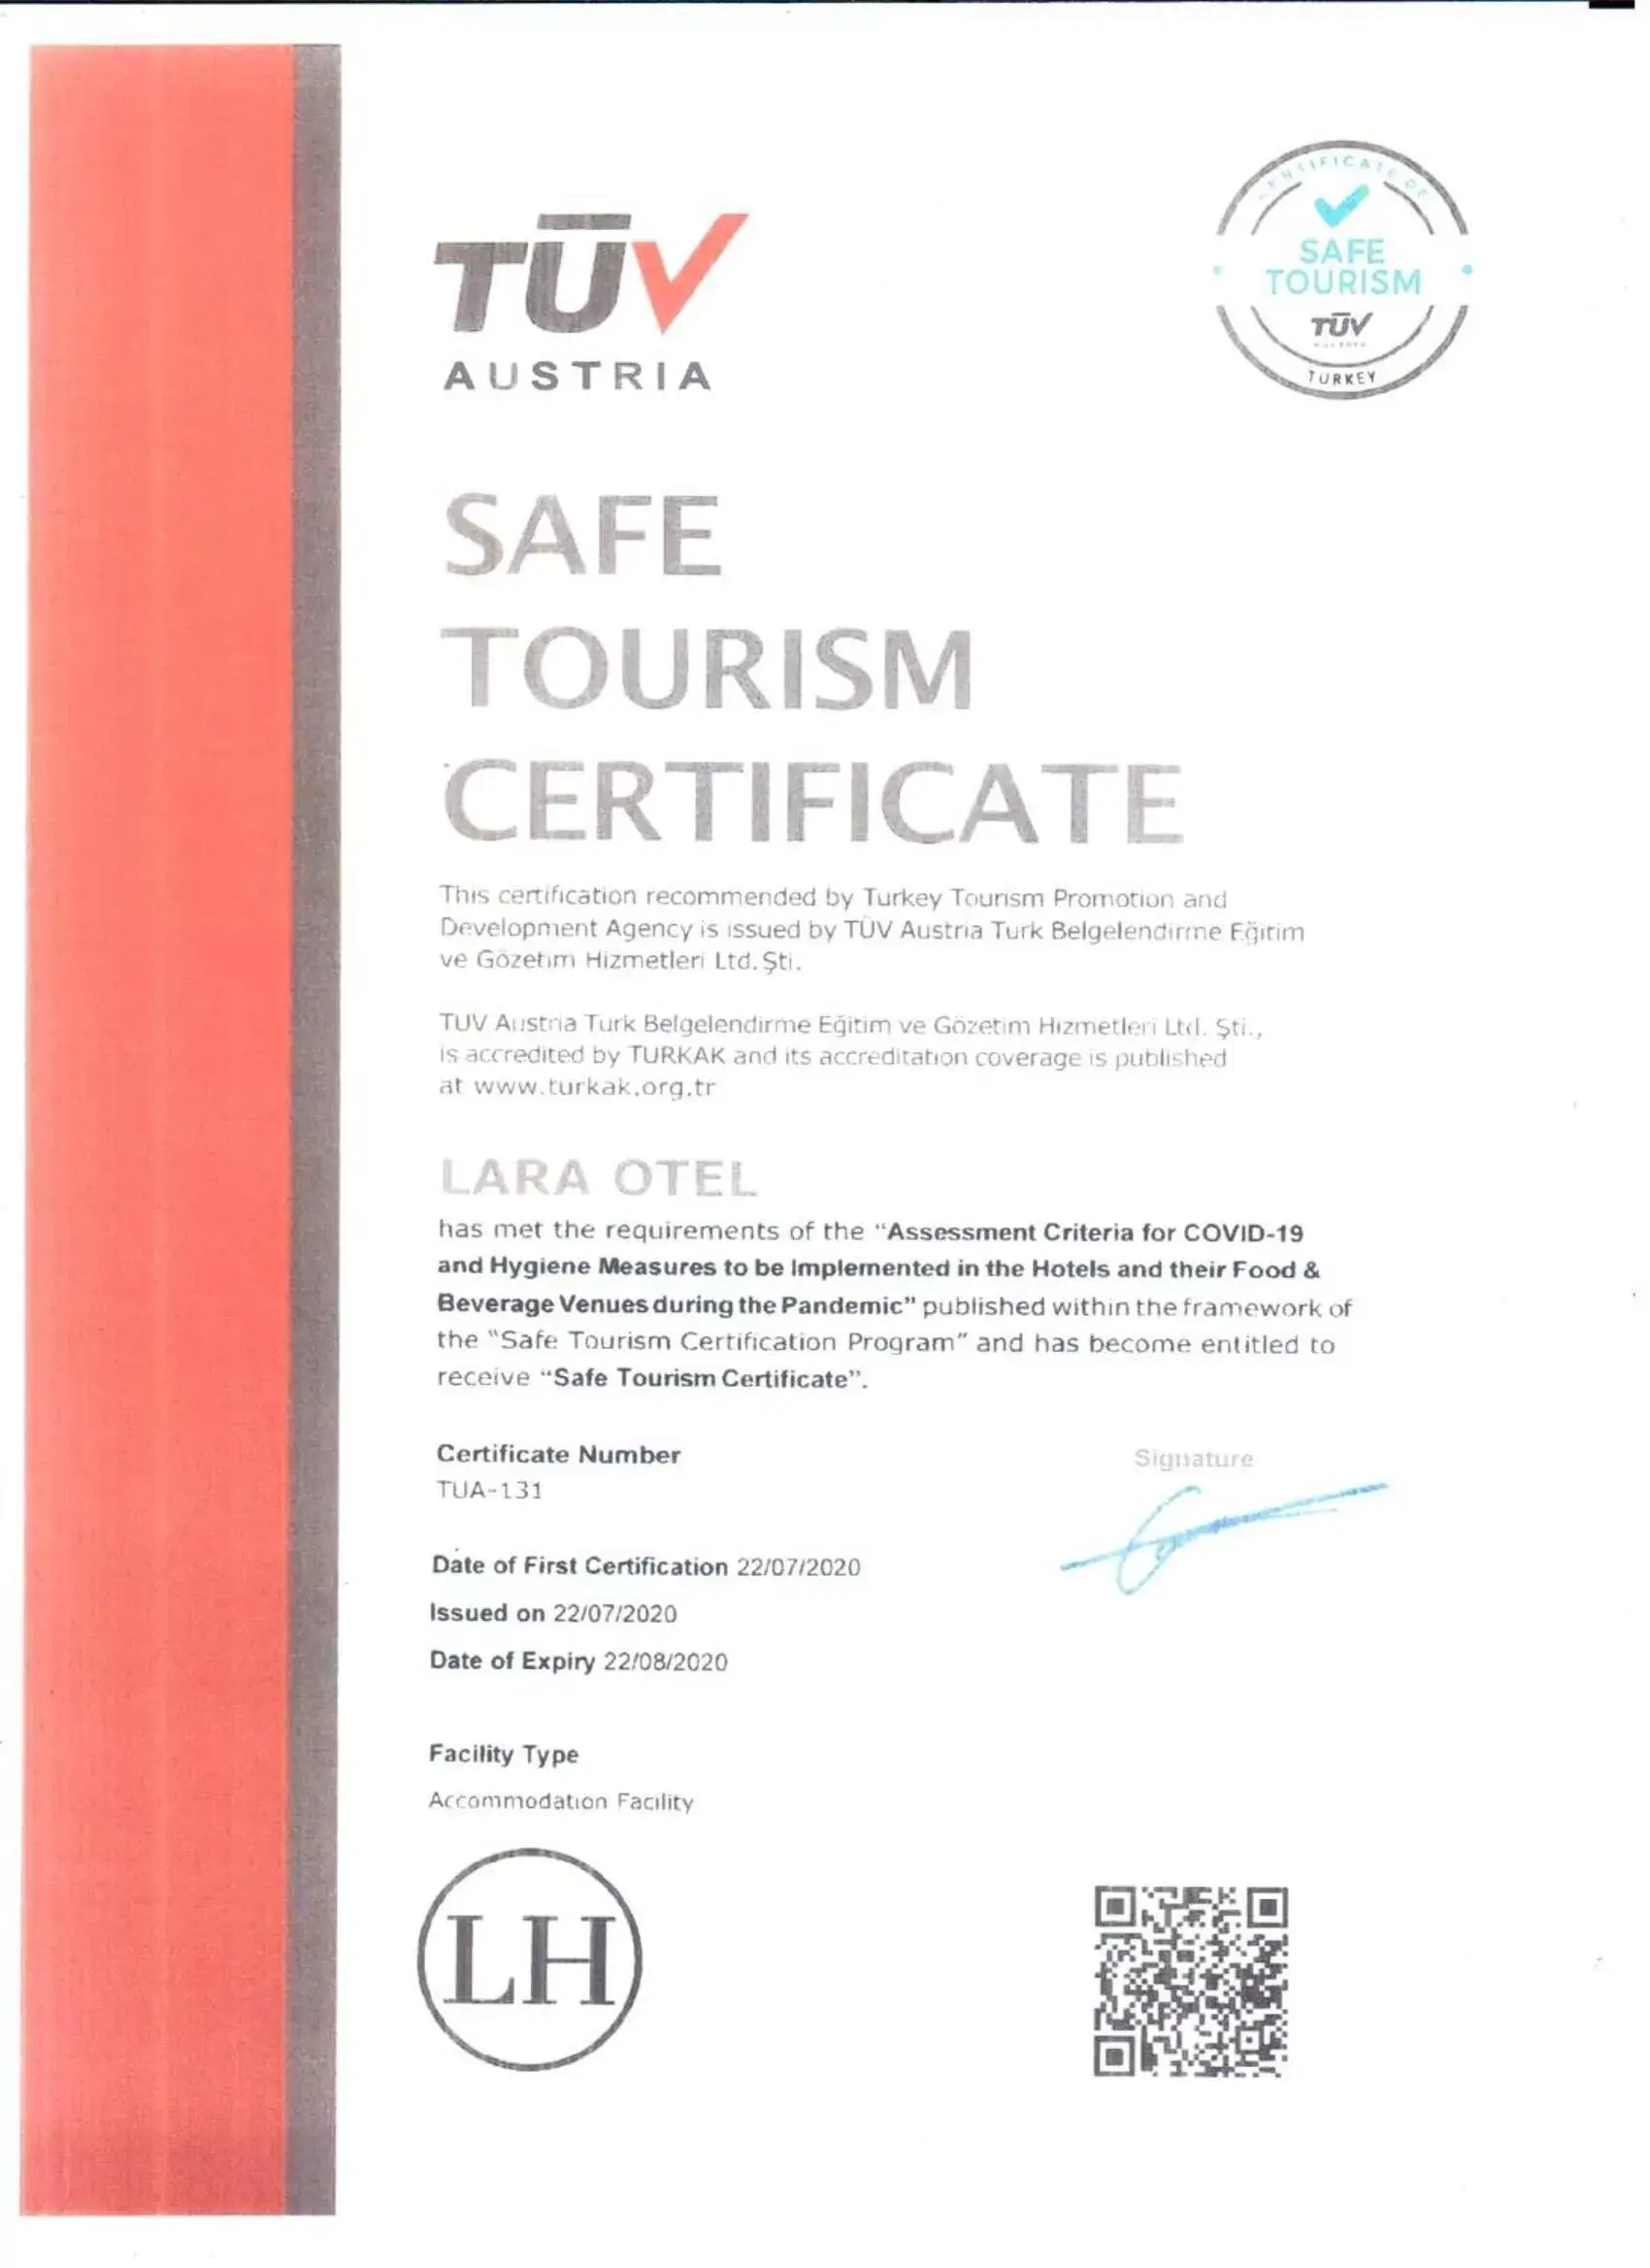 Certificate/Award in Lara Otel